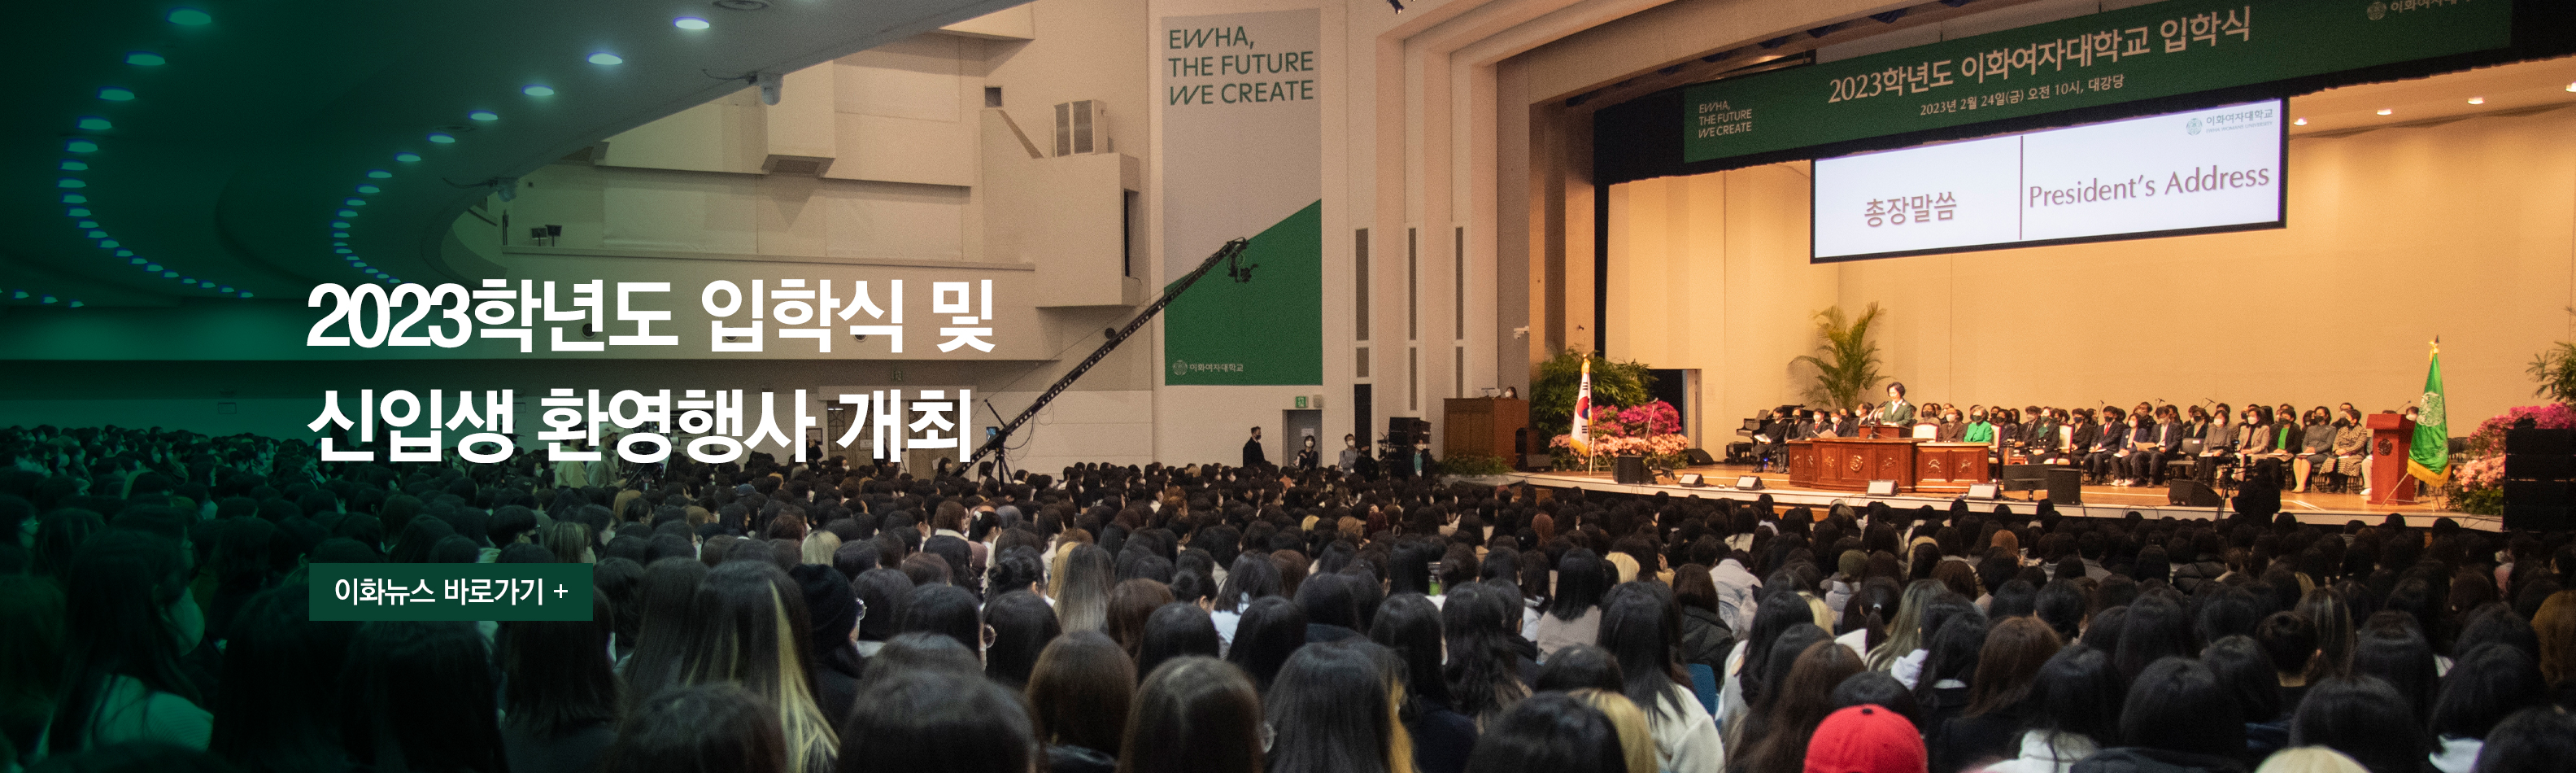 2023학년도 입학식 및 신입생 환영행사 개최 이화뉴스